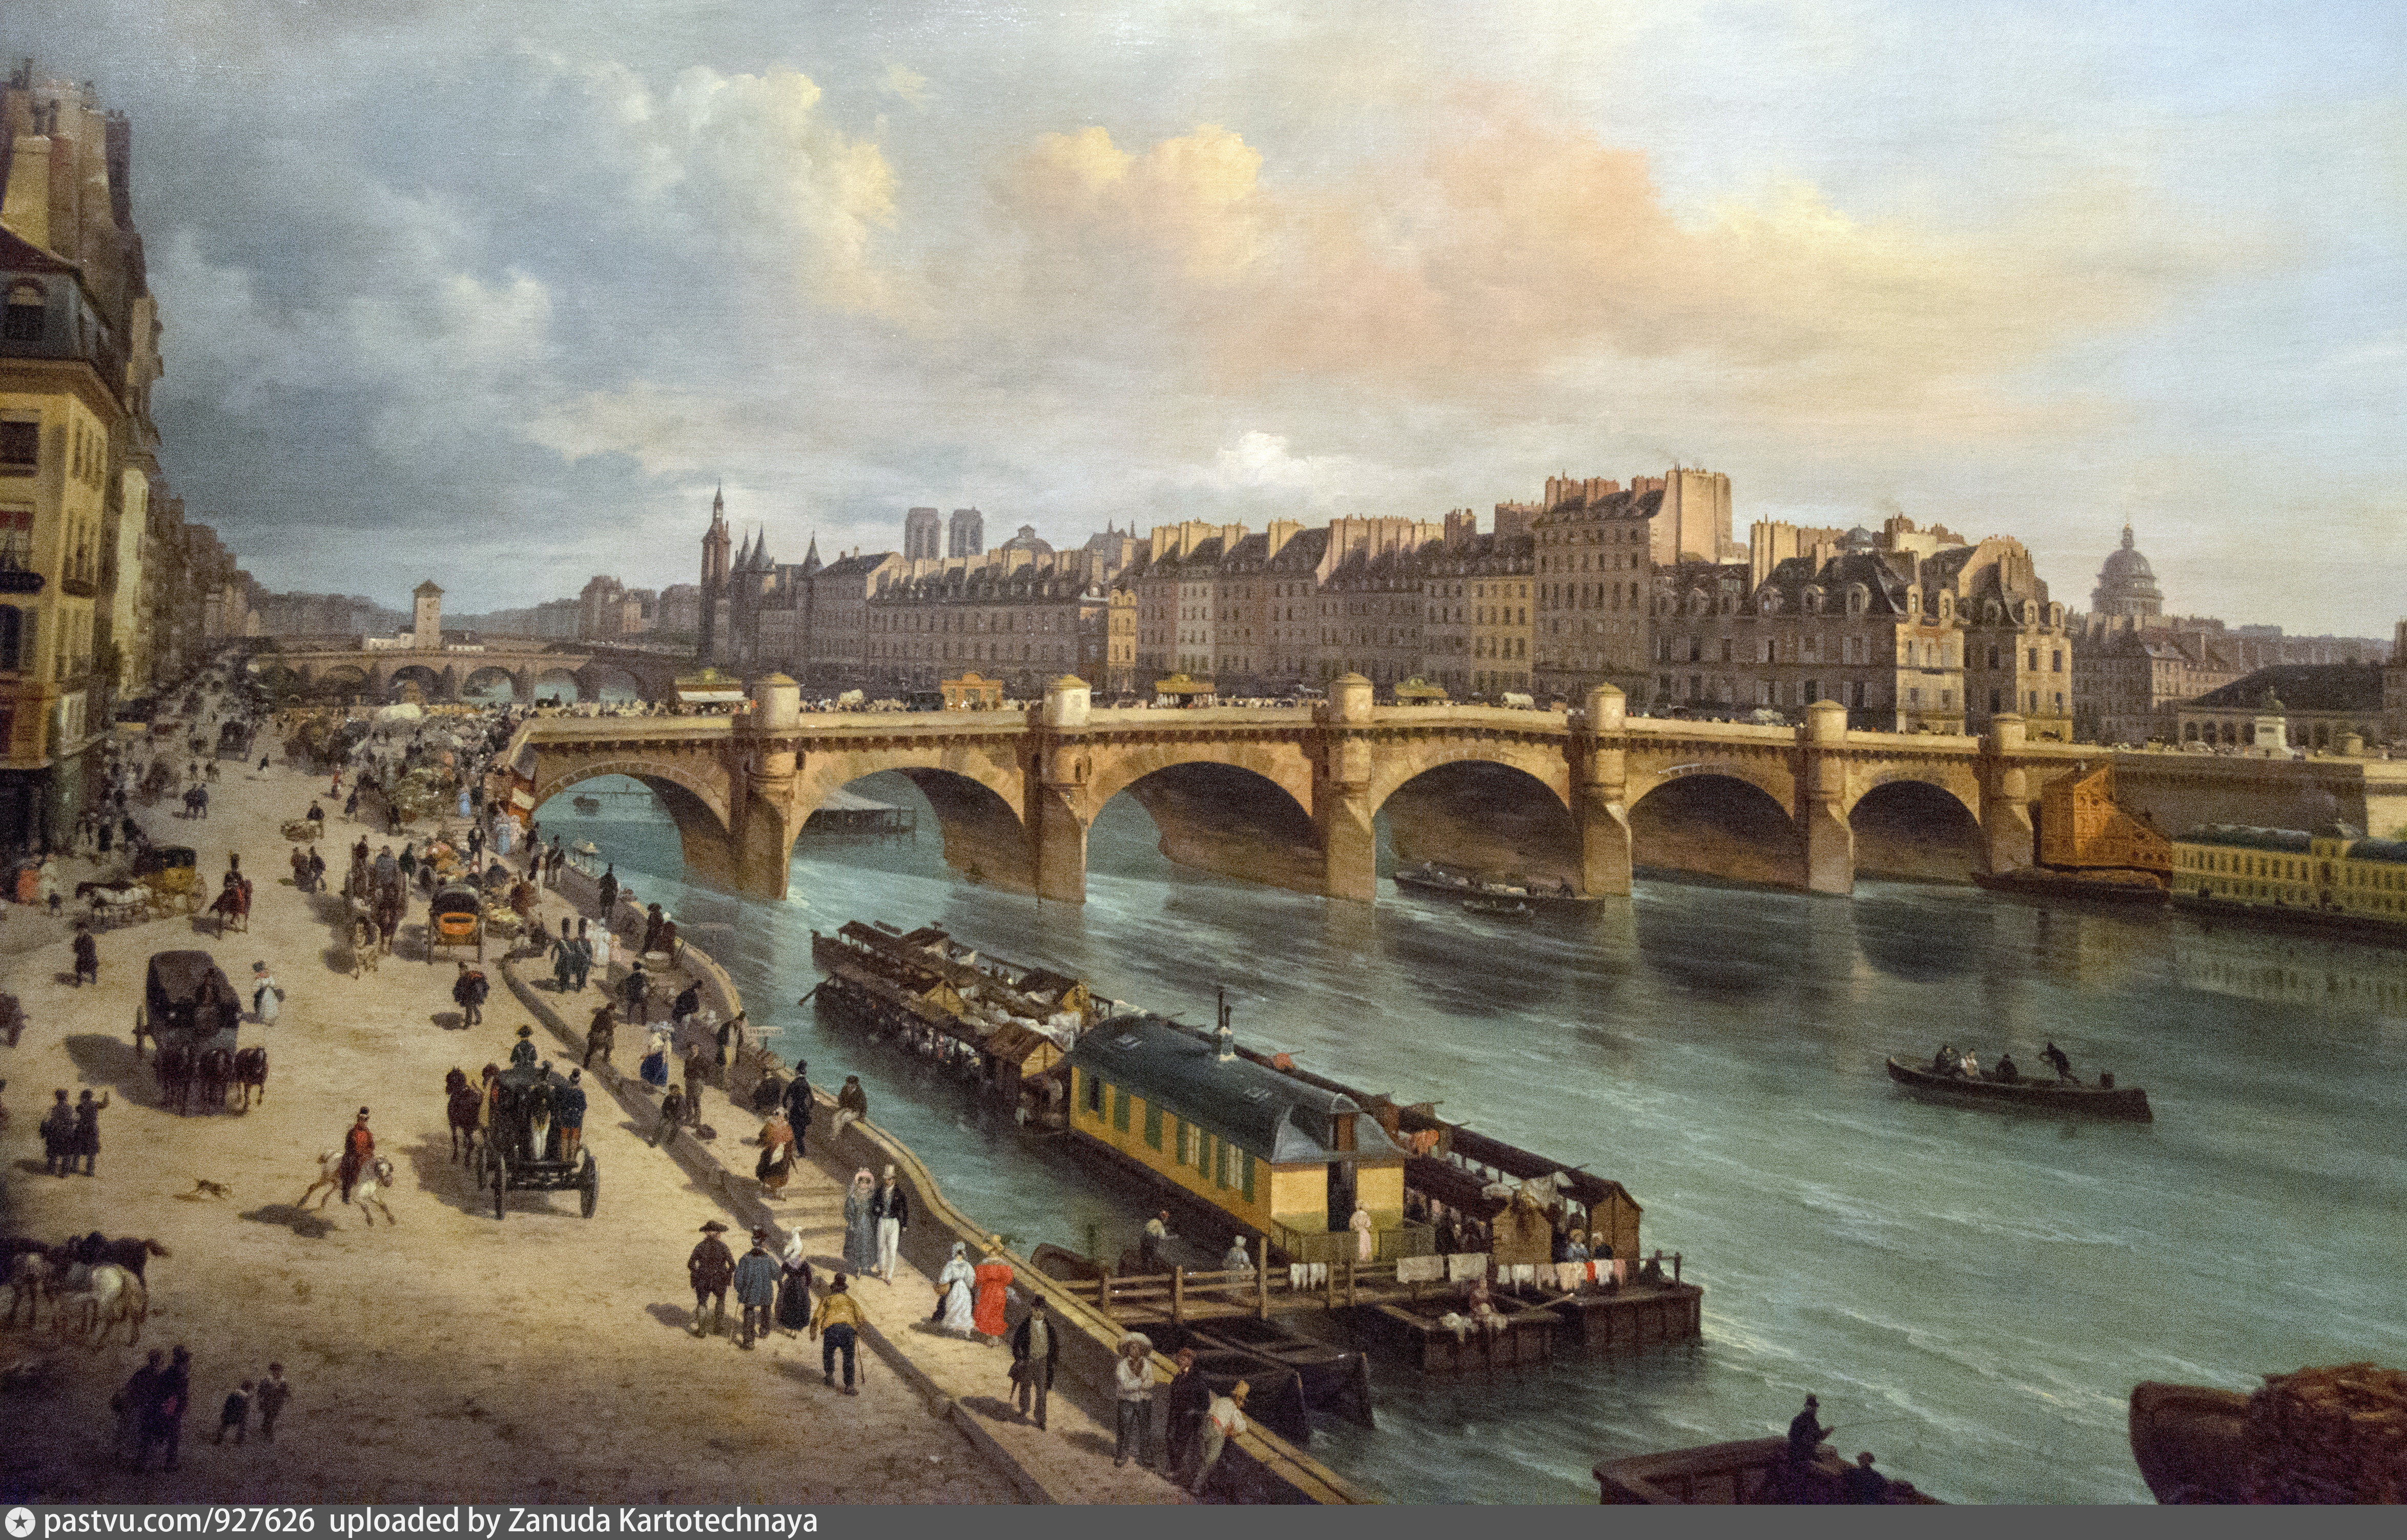 Франция 18 19 веков. Франция 1800 год. Италия 1830 е. История Франции. Джузеппе Канелла вид на новый мост.